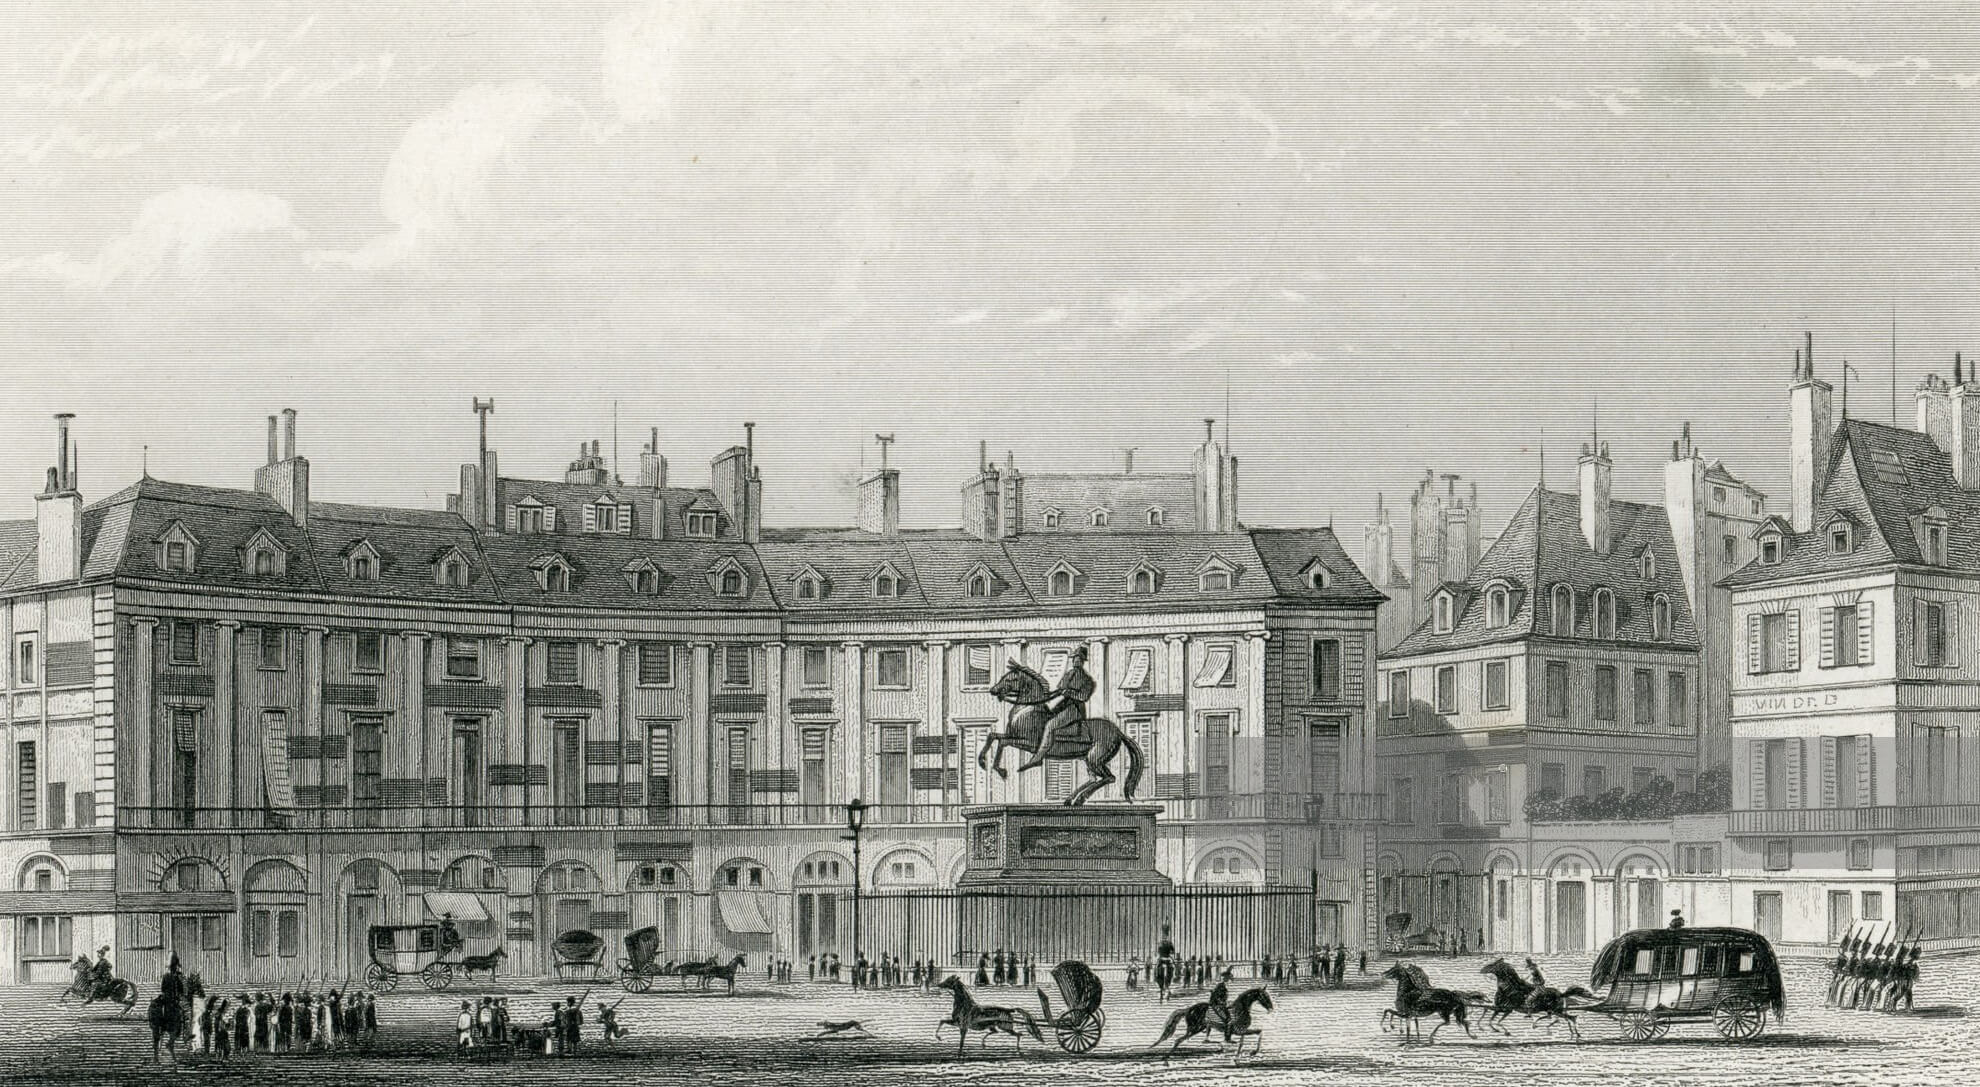 Reprezentacyjne budynki przy Place des Victoires w Paryżu